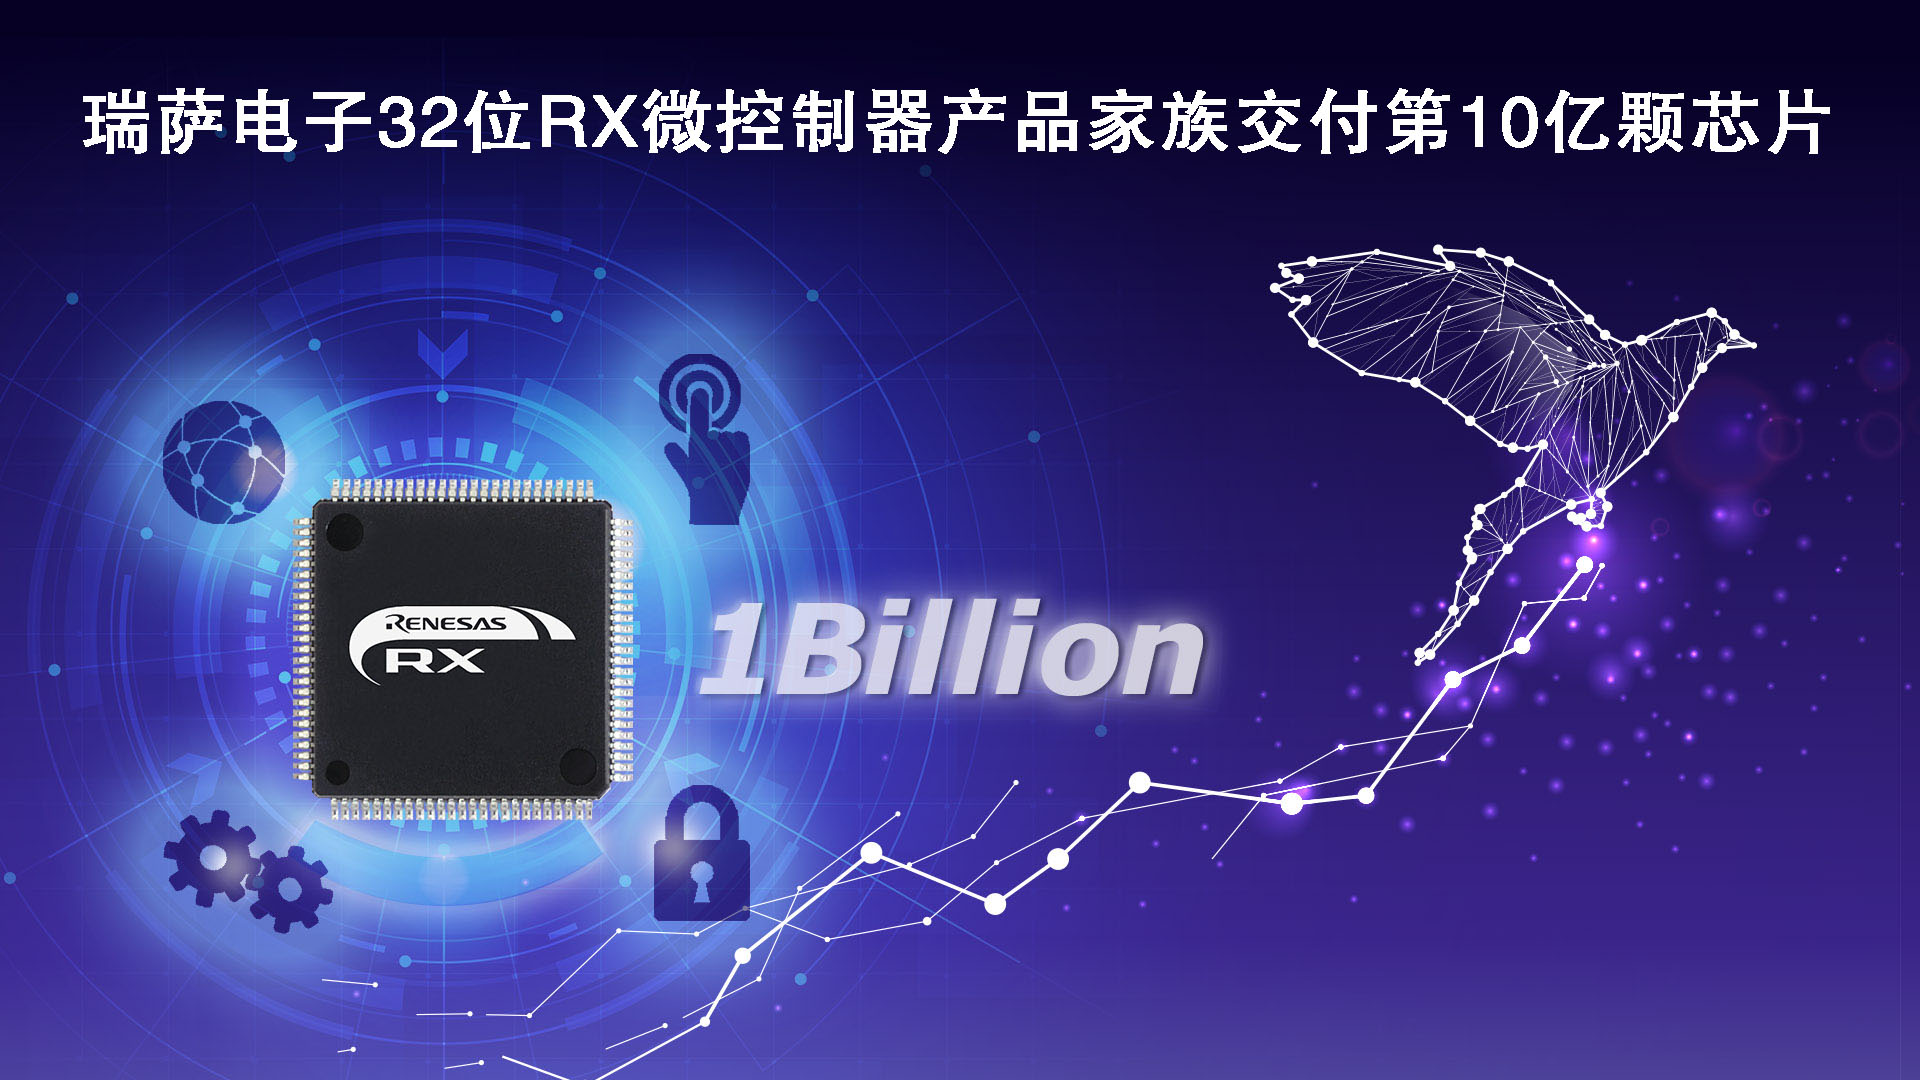 瑞萨电子32位RX微控制器产品家族交付第10亿颗芯片.jpg